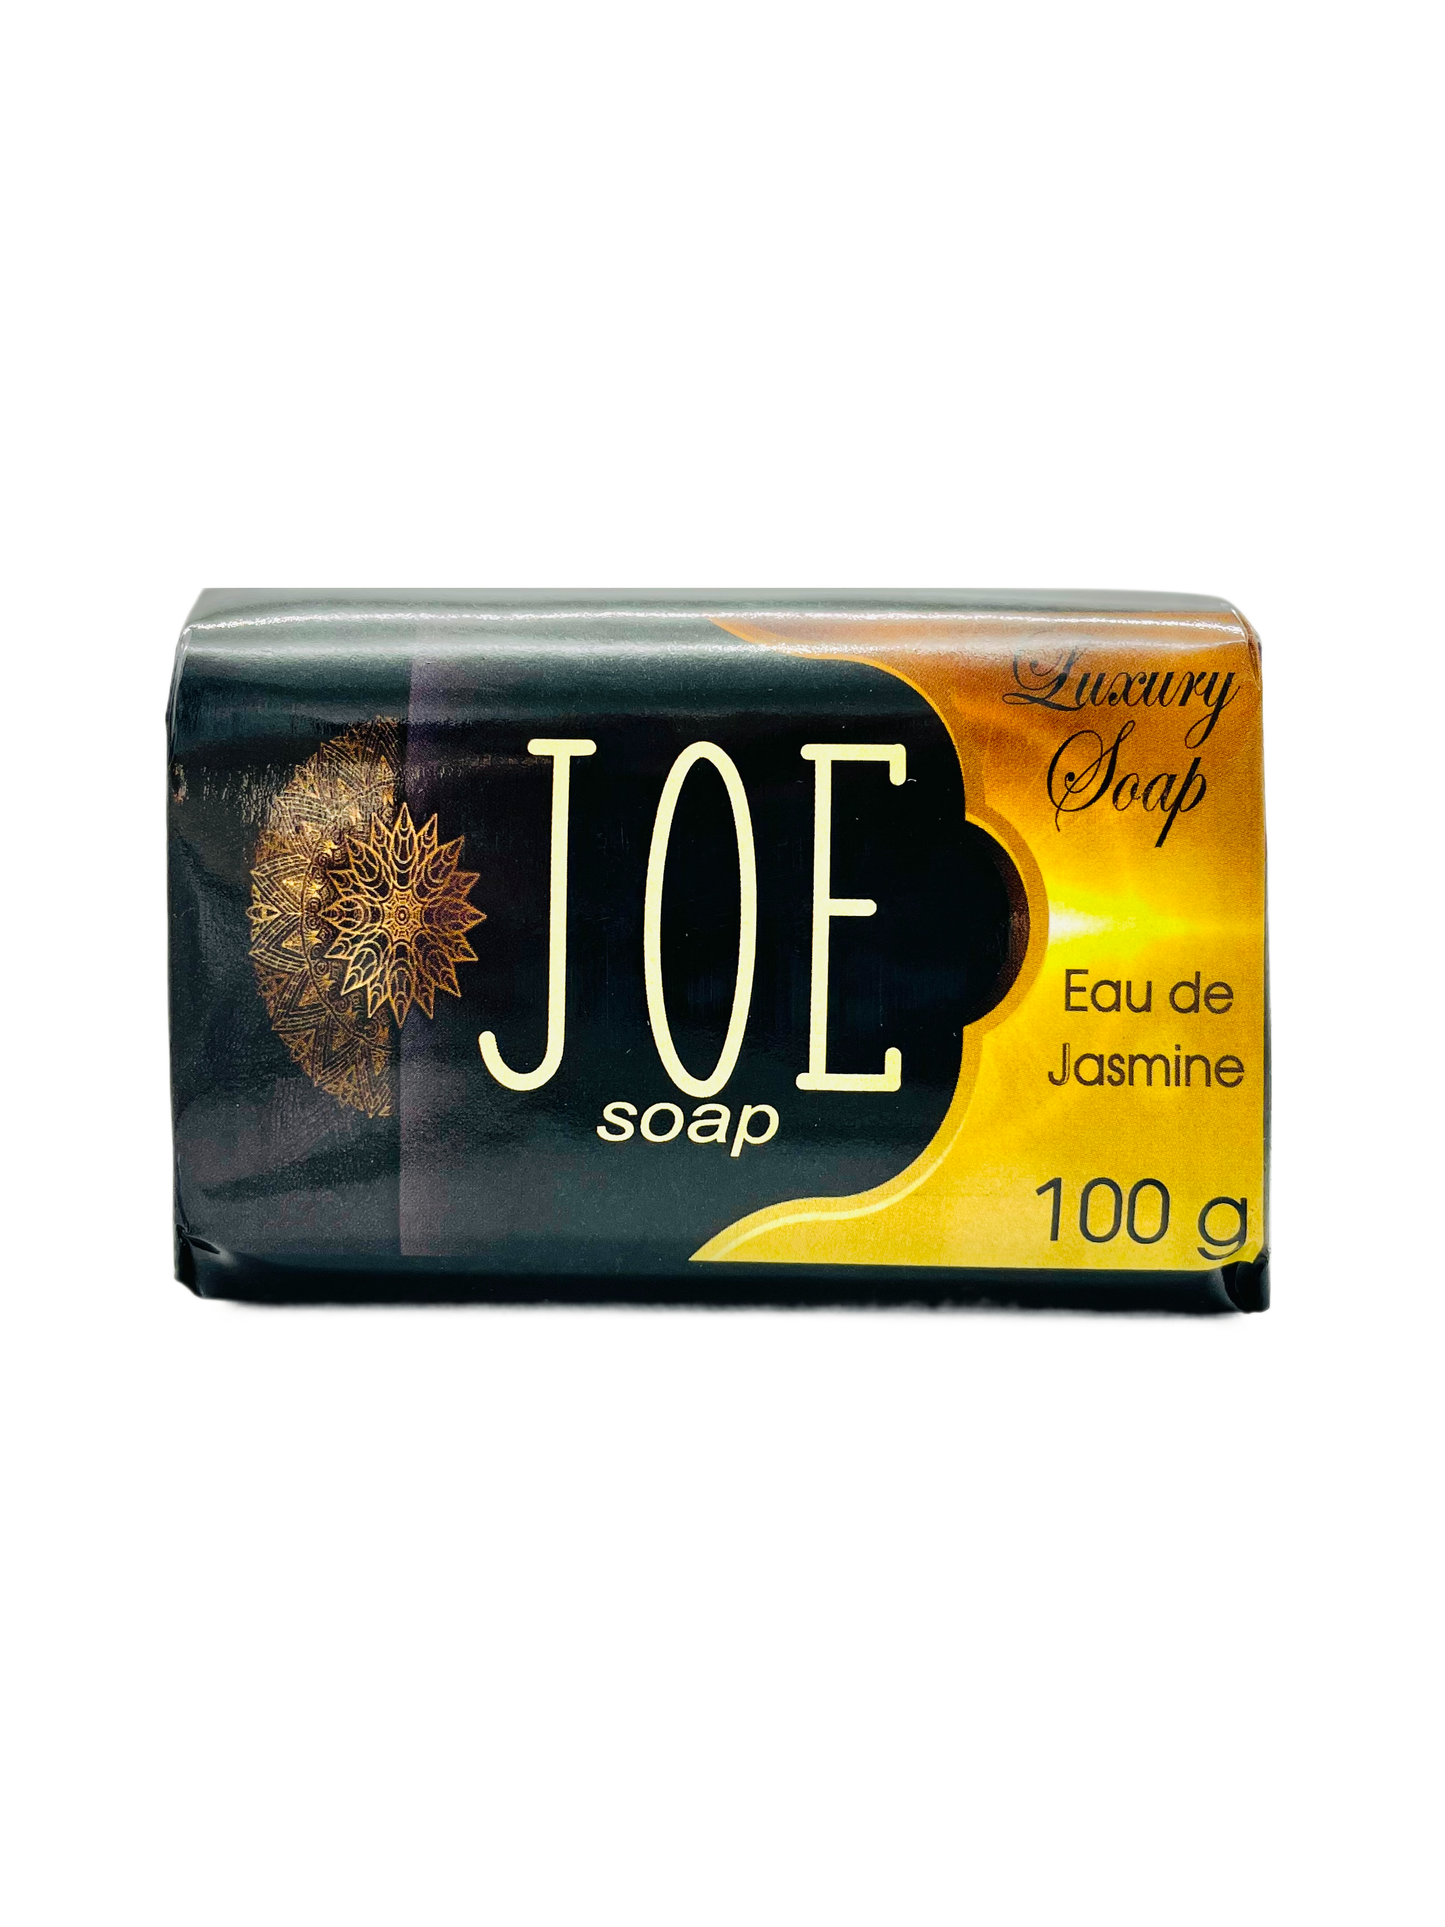 Joe Soap Luxury Soap 100g